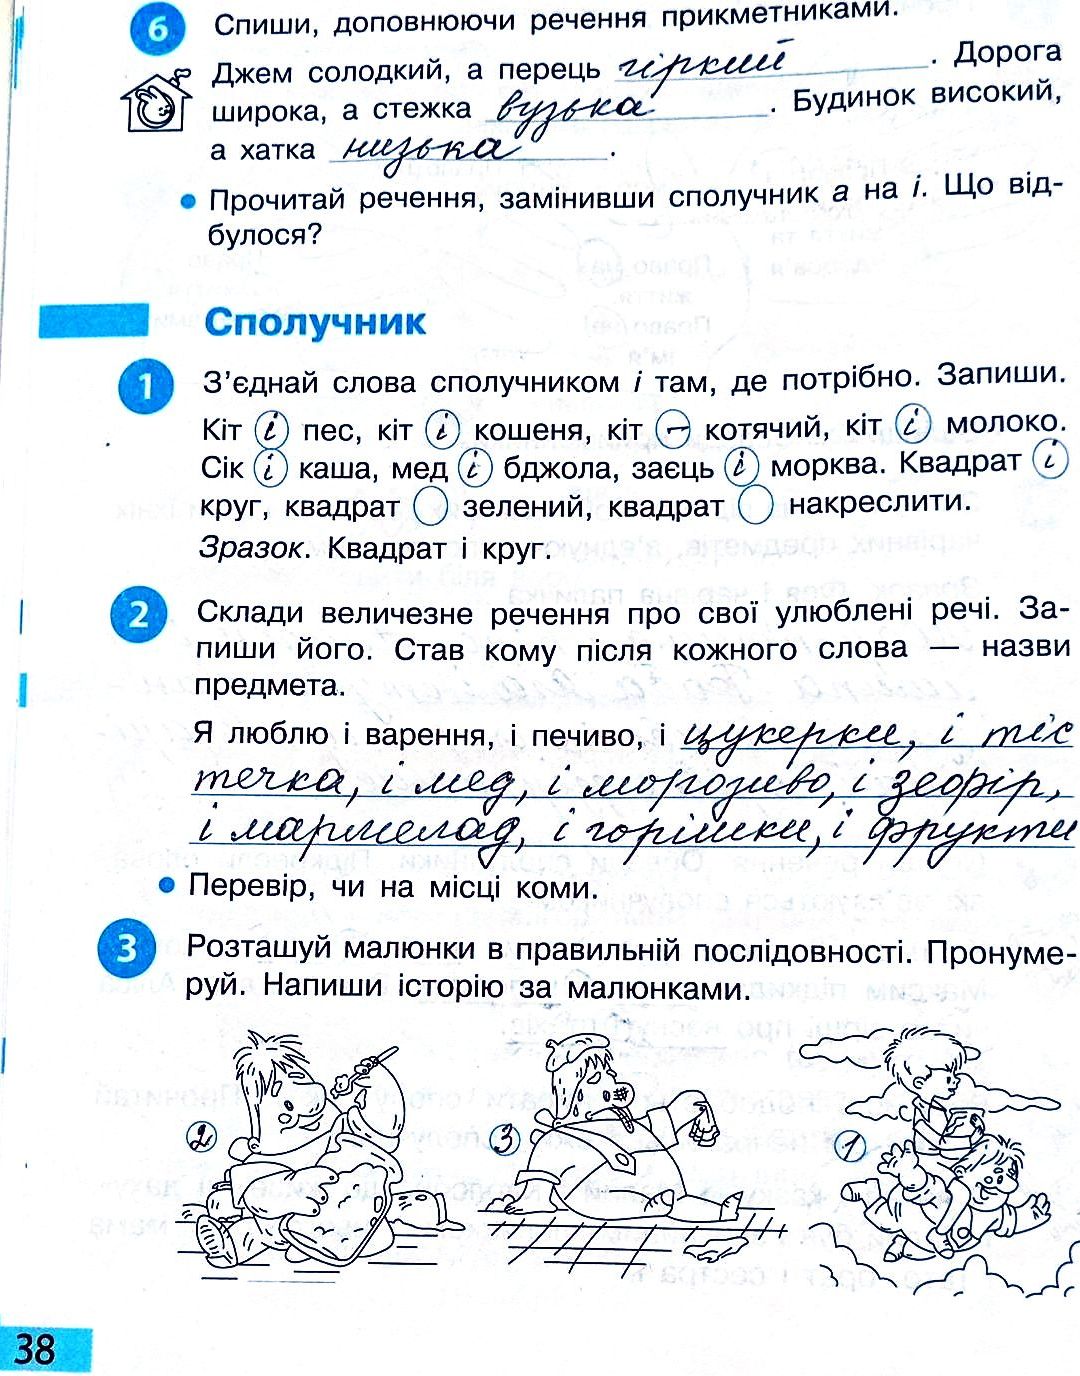 Сторінка 38 частина 2 гдз 3 клас робочий зошит українська мова Большакова